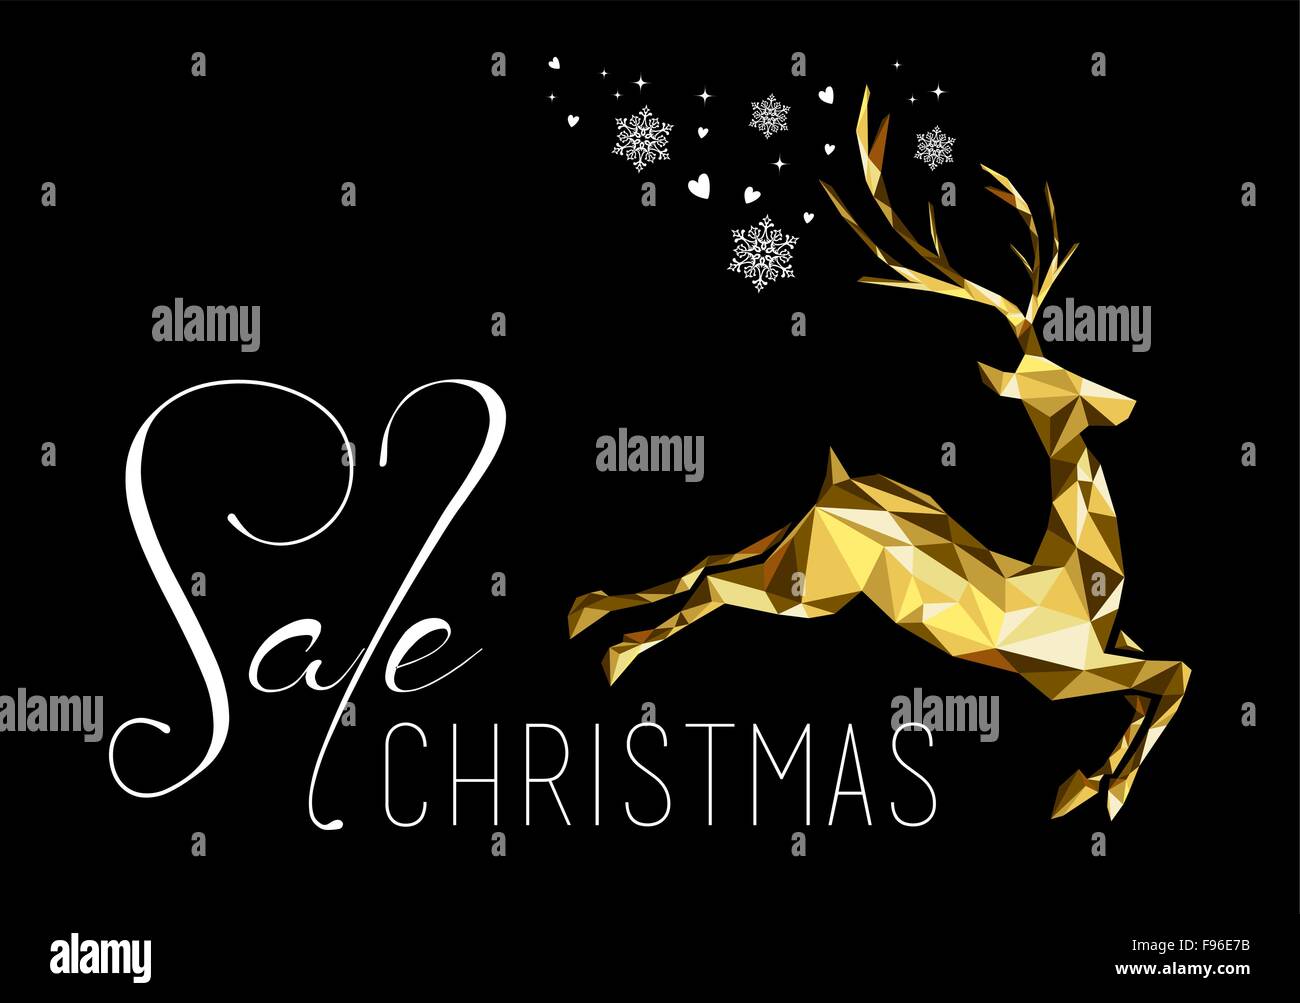 Weihnachten Verkauf Illustration design mit gold low-Poly-Rentier und Urlaub-Elementen. Ideal für Geschäft, laden oder Kampagne Plakat Stock Vektor